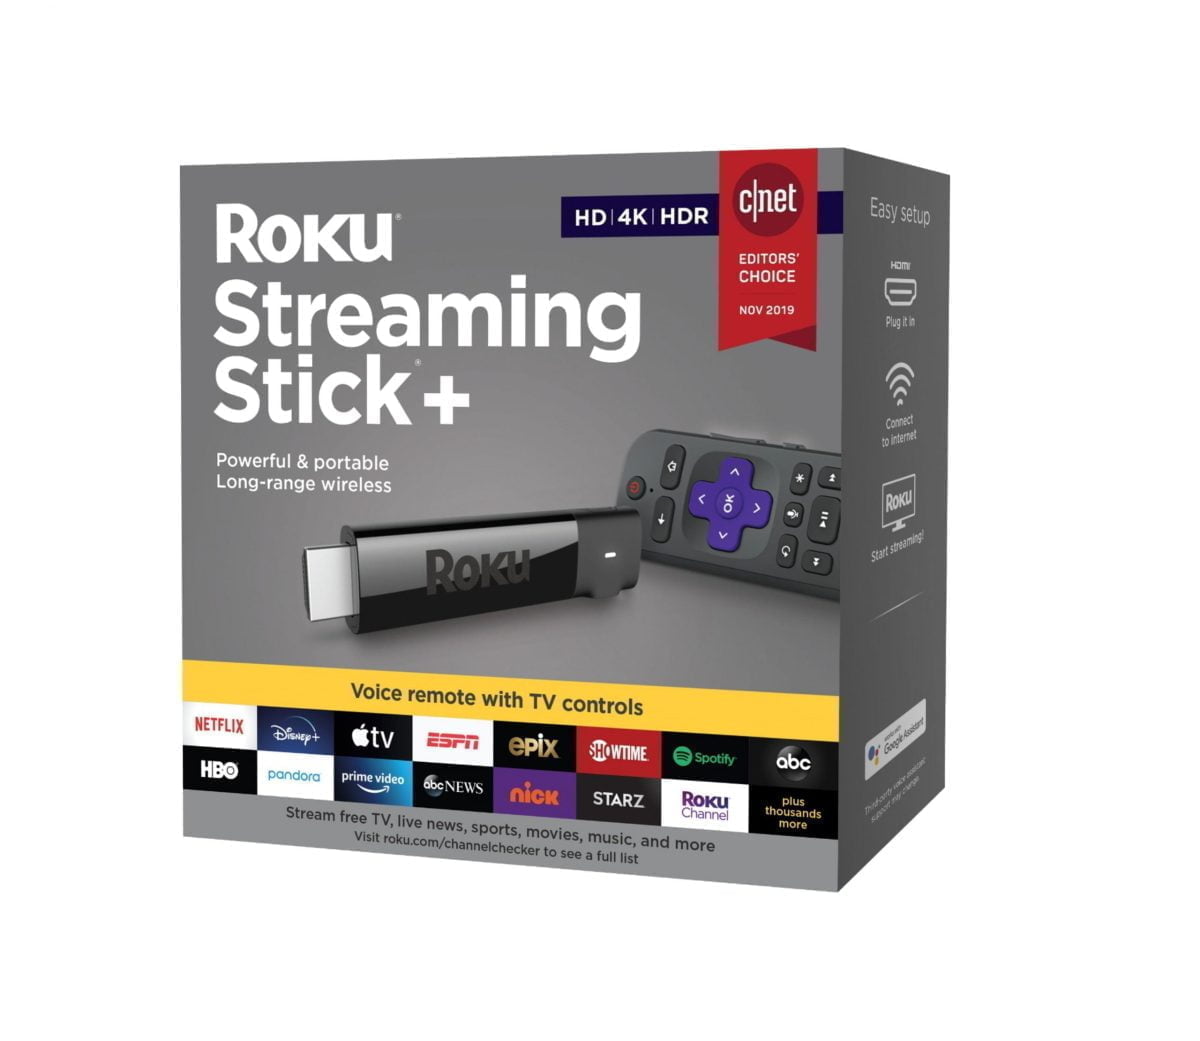 5948005Cv13D Scaled روكو &Amp;Lt;H1&Amp;Gt;Roku Streaming Stick + 4K Streaming Media Player مع التحكم الصوتي عن بعد مع أدوات التحكم في التلفزيون - أسود&Amp;Lt;/H1&Amp;Gt;
استمتع بالترفيه المستمر مع Roku Streaming Stick +. يوفر جهاز الاستقبال اللاسلكي الخاص به إشارة قوية للبث السلس في الغرف البعيدة عن جهاز التوجيه ، كما أنه يدعم دقة 4K و Hd و Hdr للحصول على صور واضحة وملونة. اصطحب Roku Streaming Stick + الصغير معك في إجازة للاستمتاع بالعروض بعيدًا عن المنزل. Roku Streaming Stick + 4K Streaming Media Player مع التحكم الصوتي عن بعد مع أدوات التحكم في التلفزيون - أسود